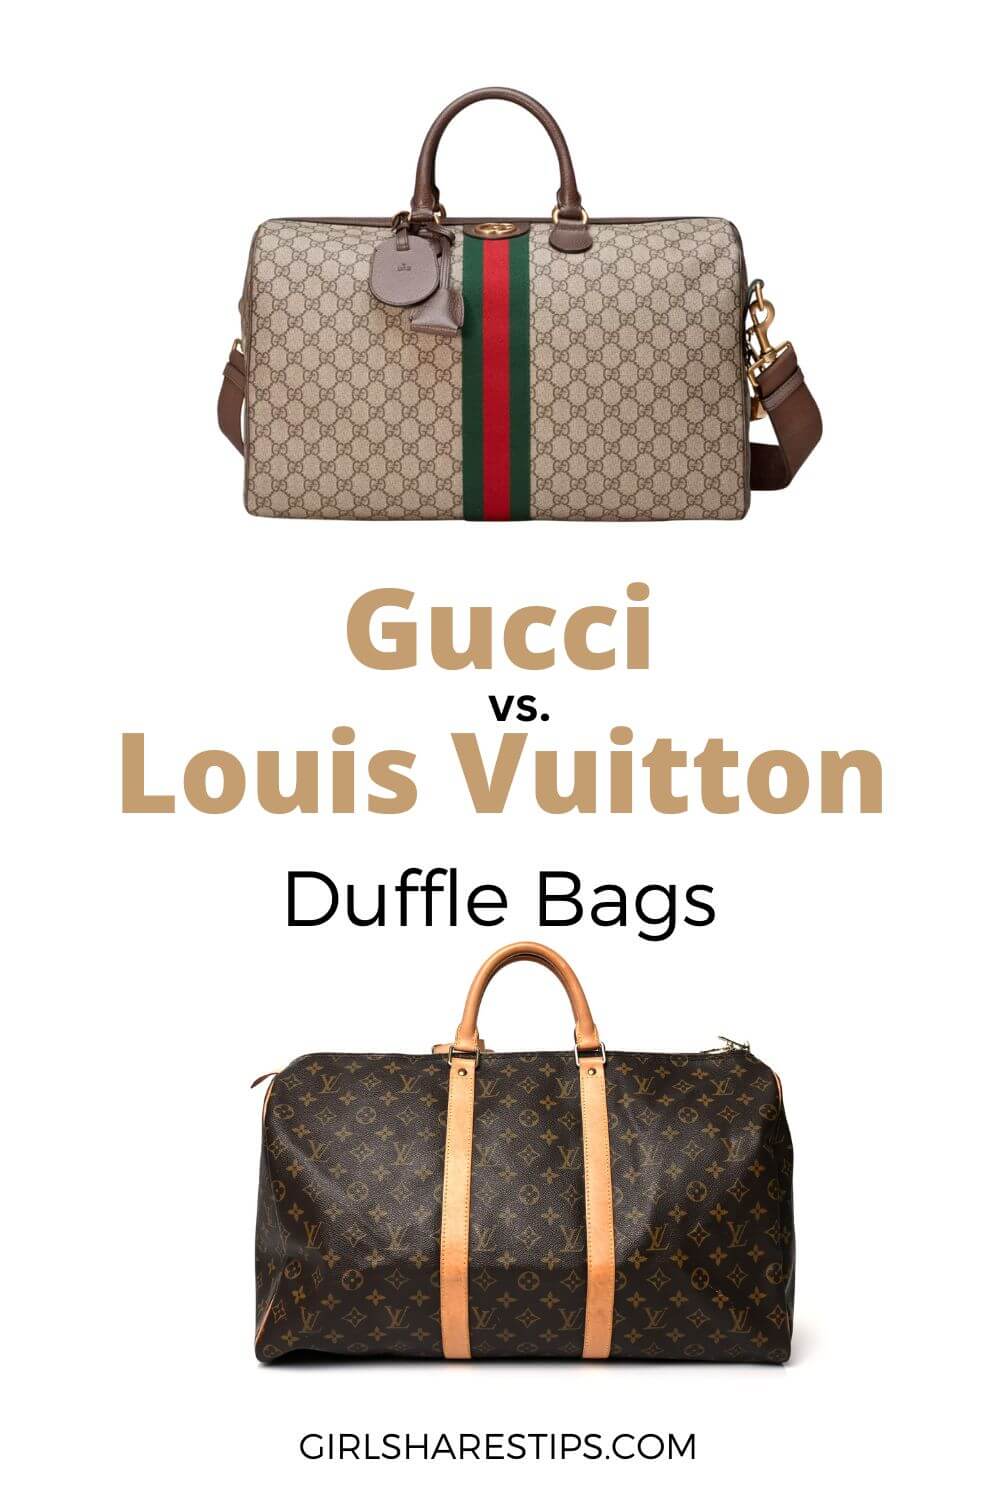 Gucci vs Louis Vuitton duffle bags